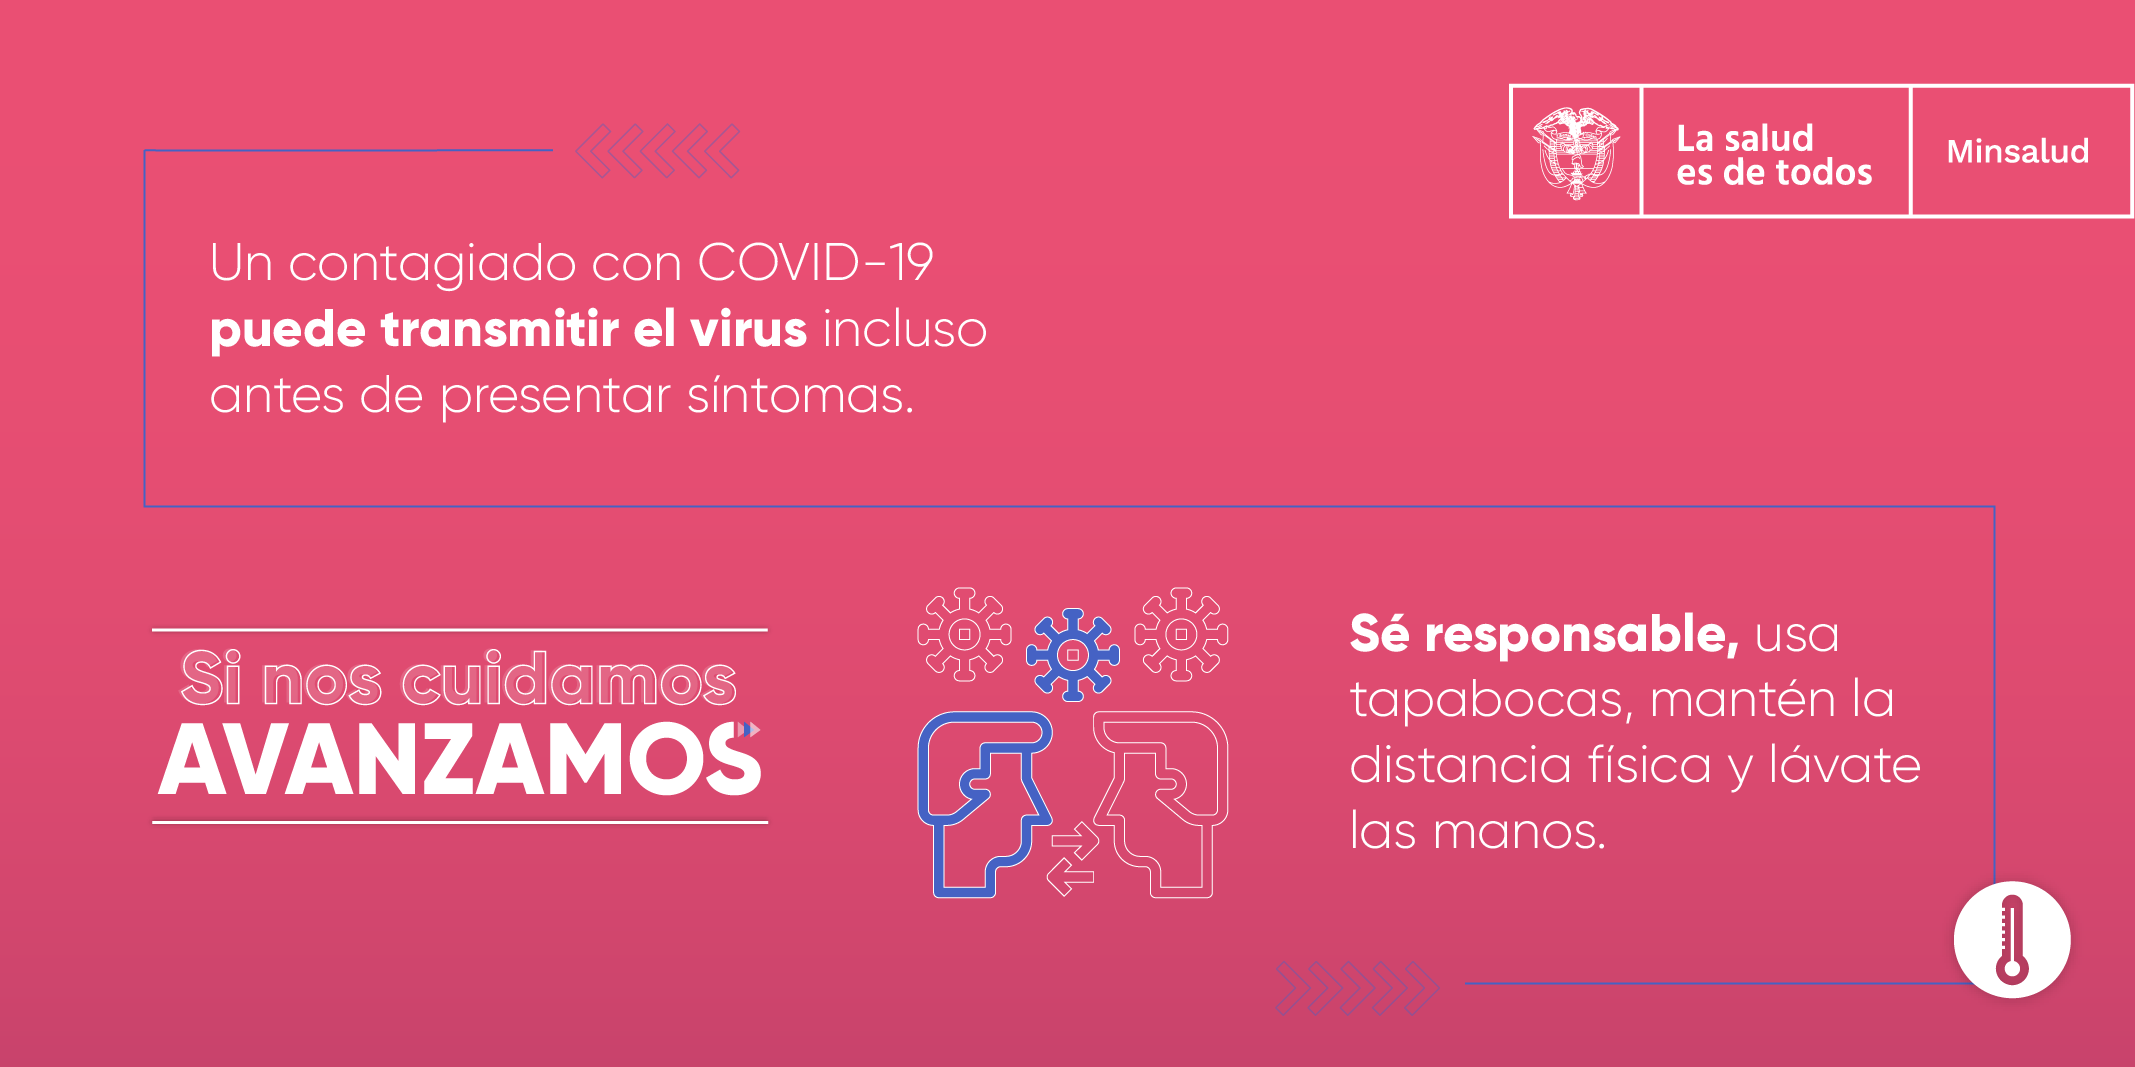 En este momento estás viendo ¿Cómo consultar la etapa de priorización en la que tendrás acceso a la vacuna contra la COVID-19?